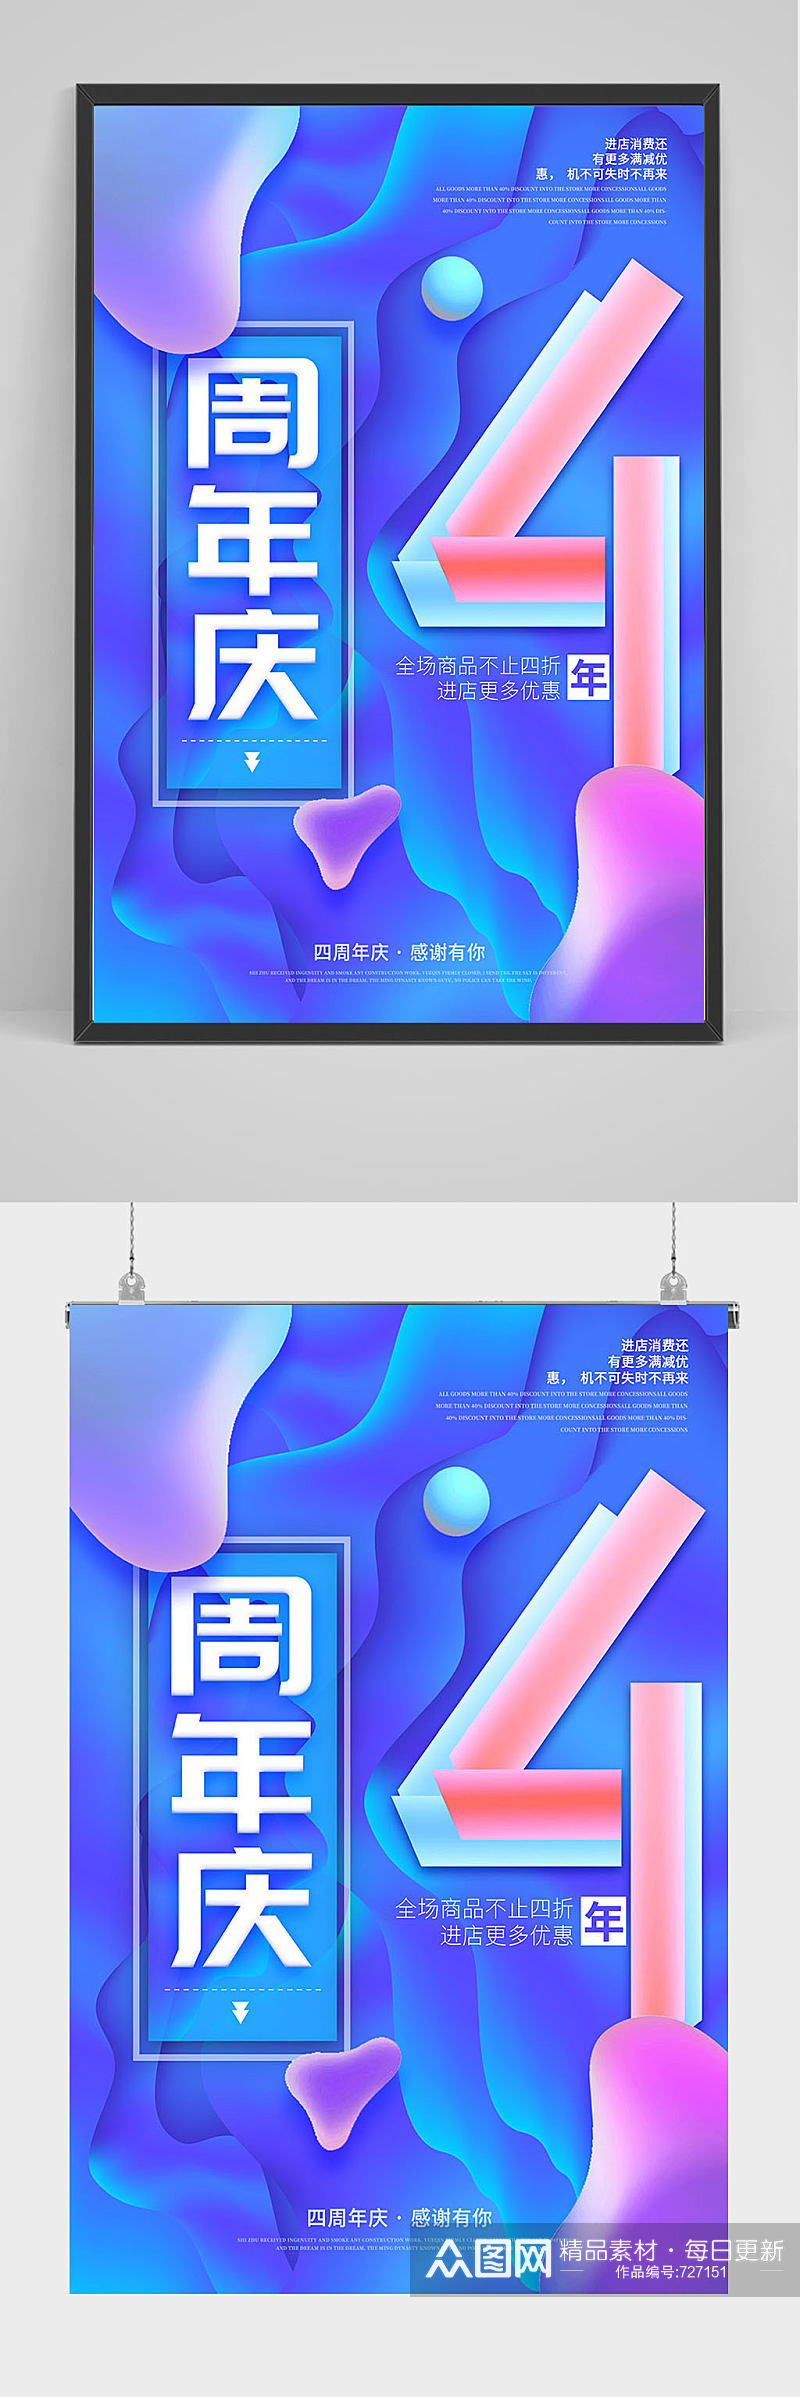 精品蓝色炫彩4周年海报设计素材